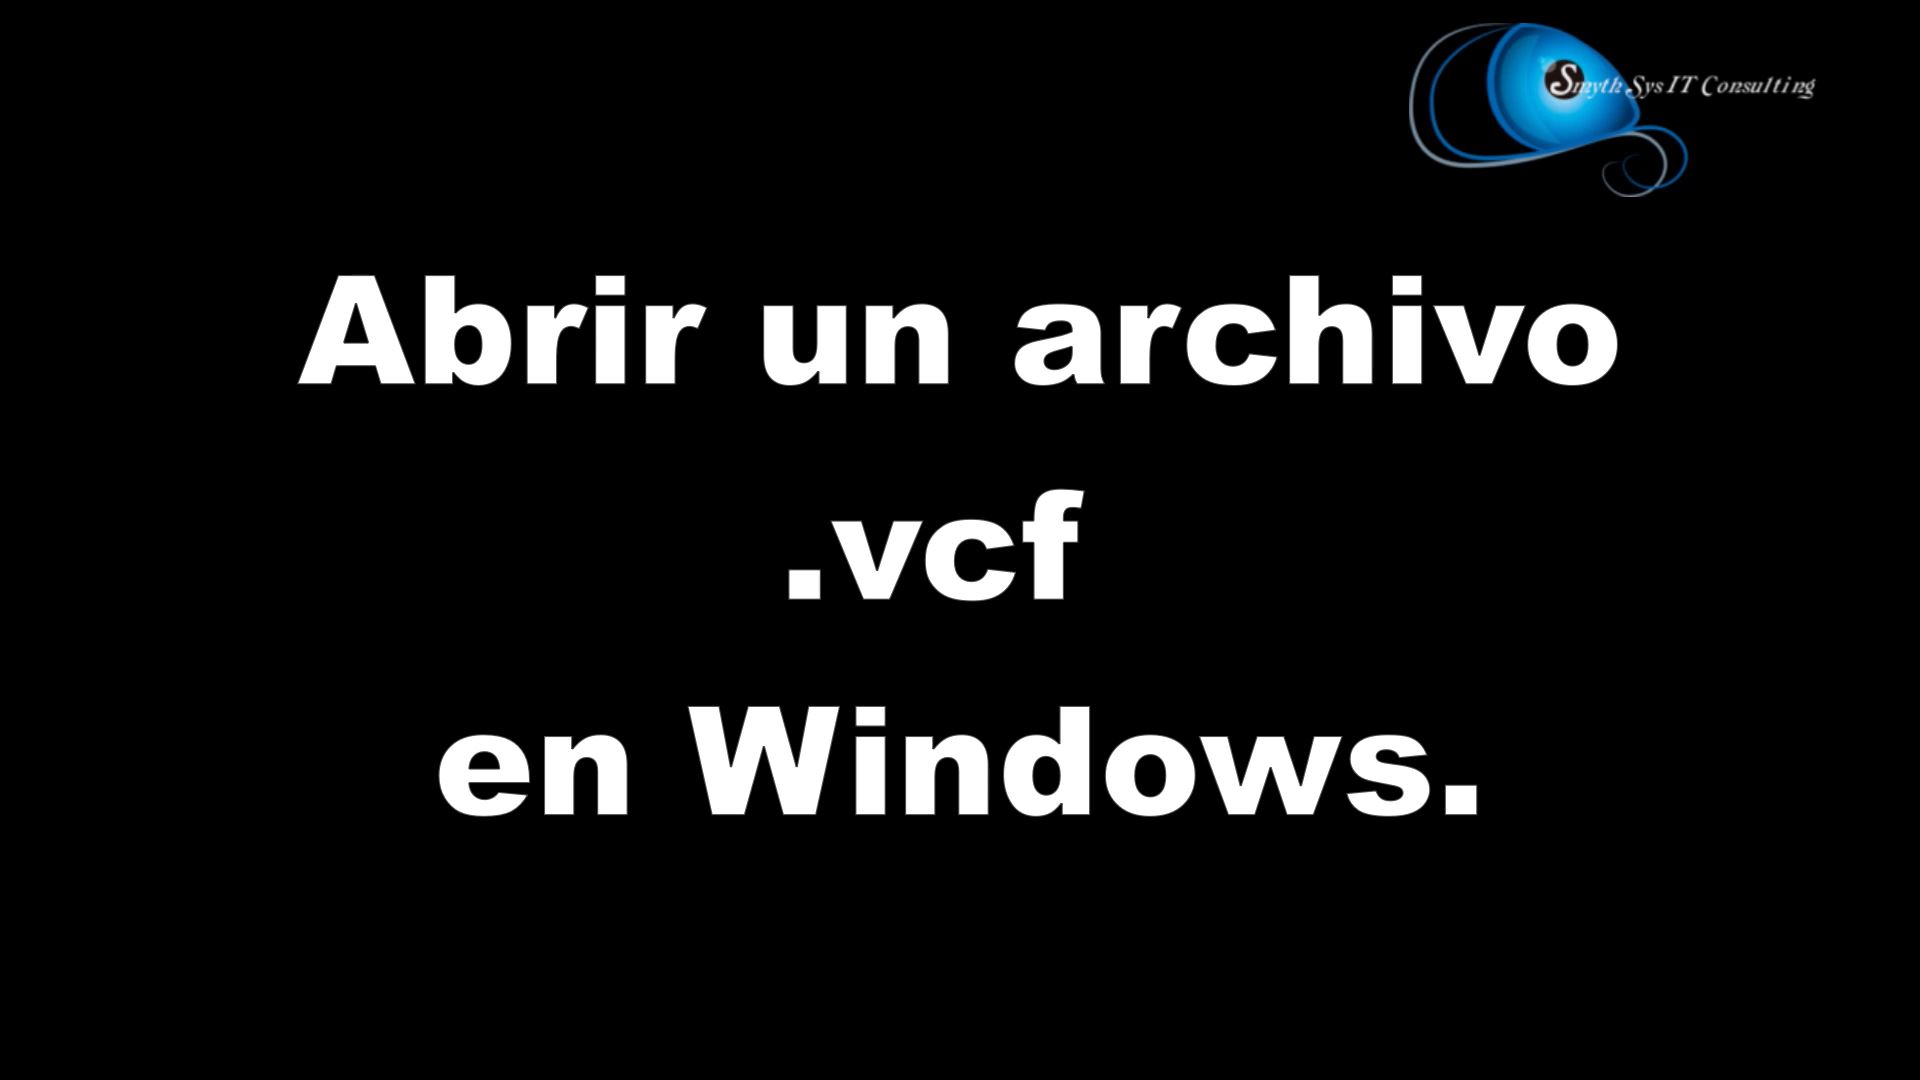 pañuelo de papel fuegos artificiales fútbol americano Cómo abrir un fichero .vcf en Windows. - SmythSys IT Consulting